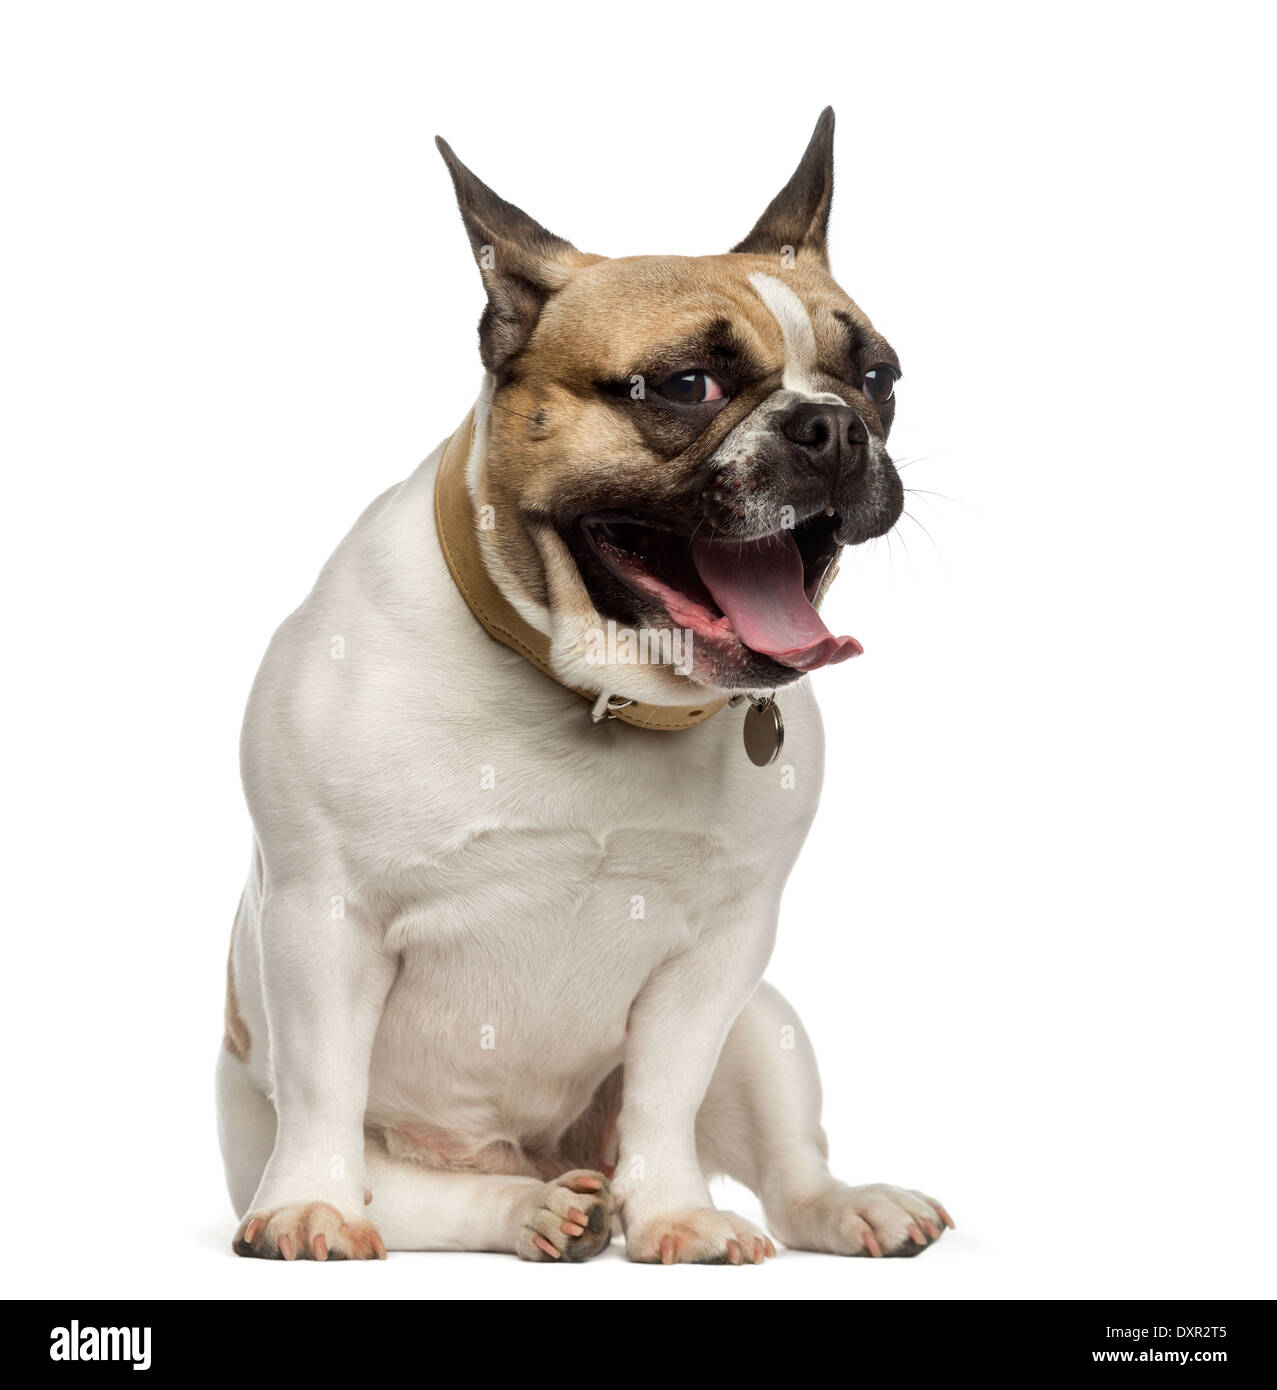 French Bulldog sitting and yawning against white background Stock Photo